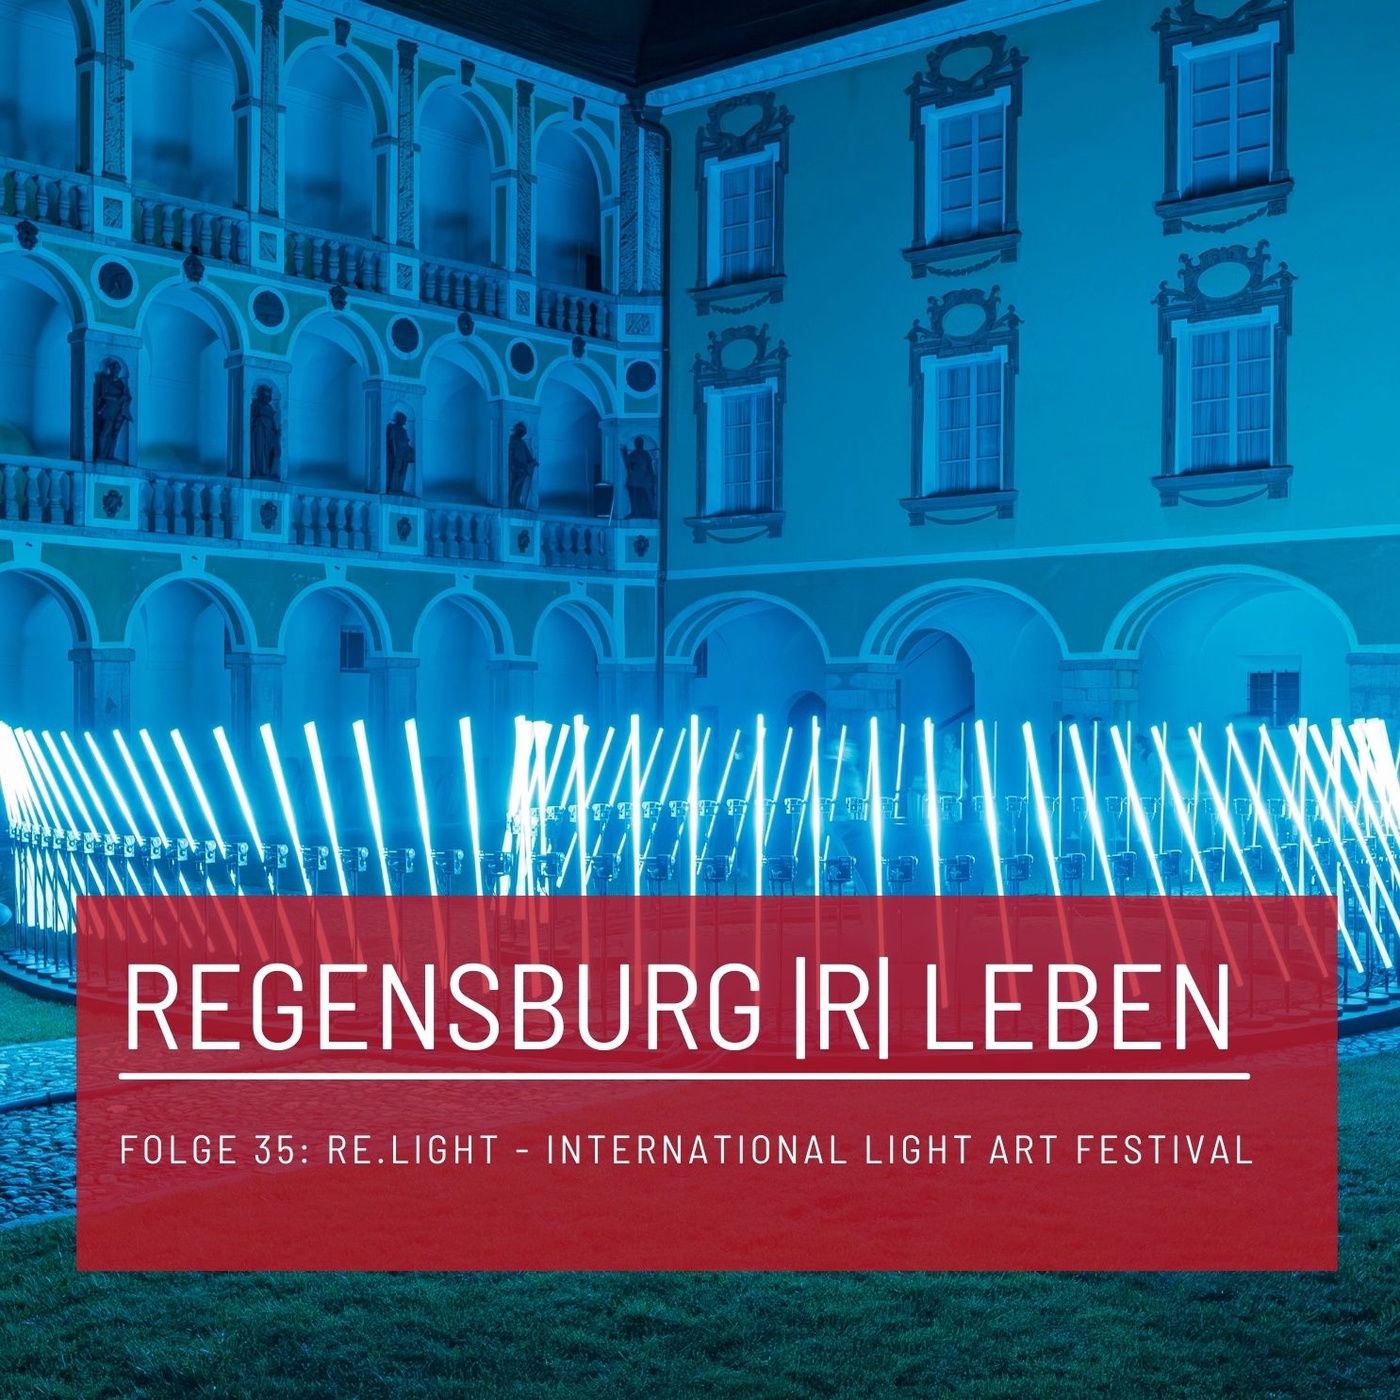 REGENSBURG |R| LEBEN - Folge 35 - RE.LIGHT